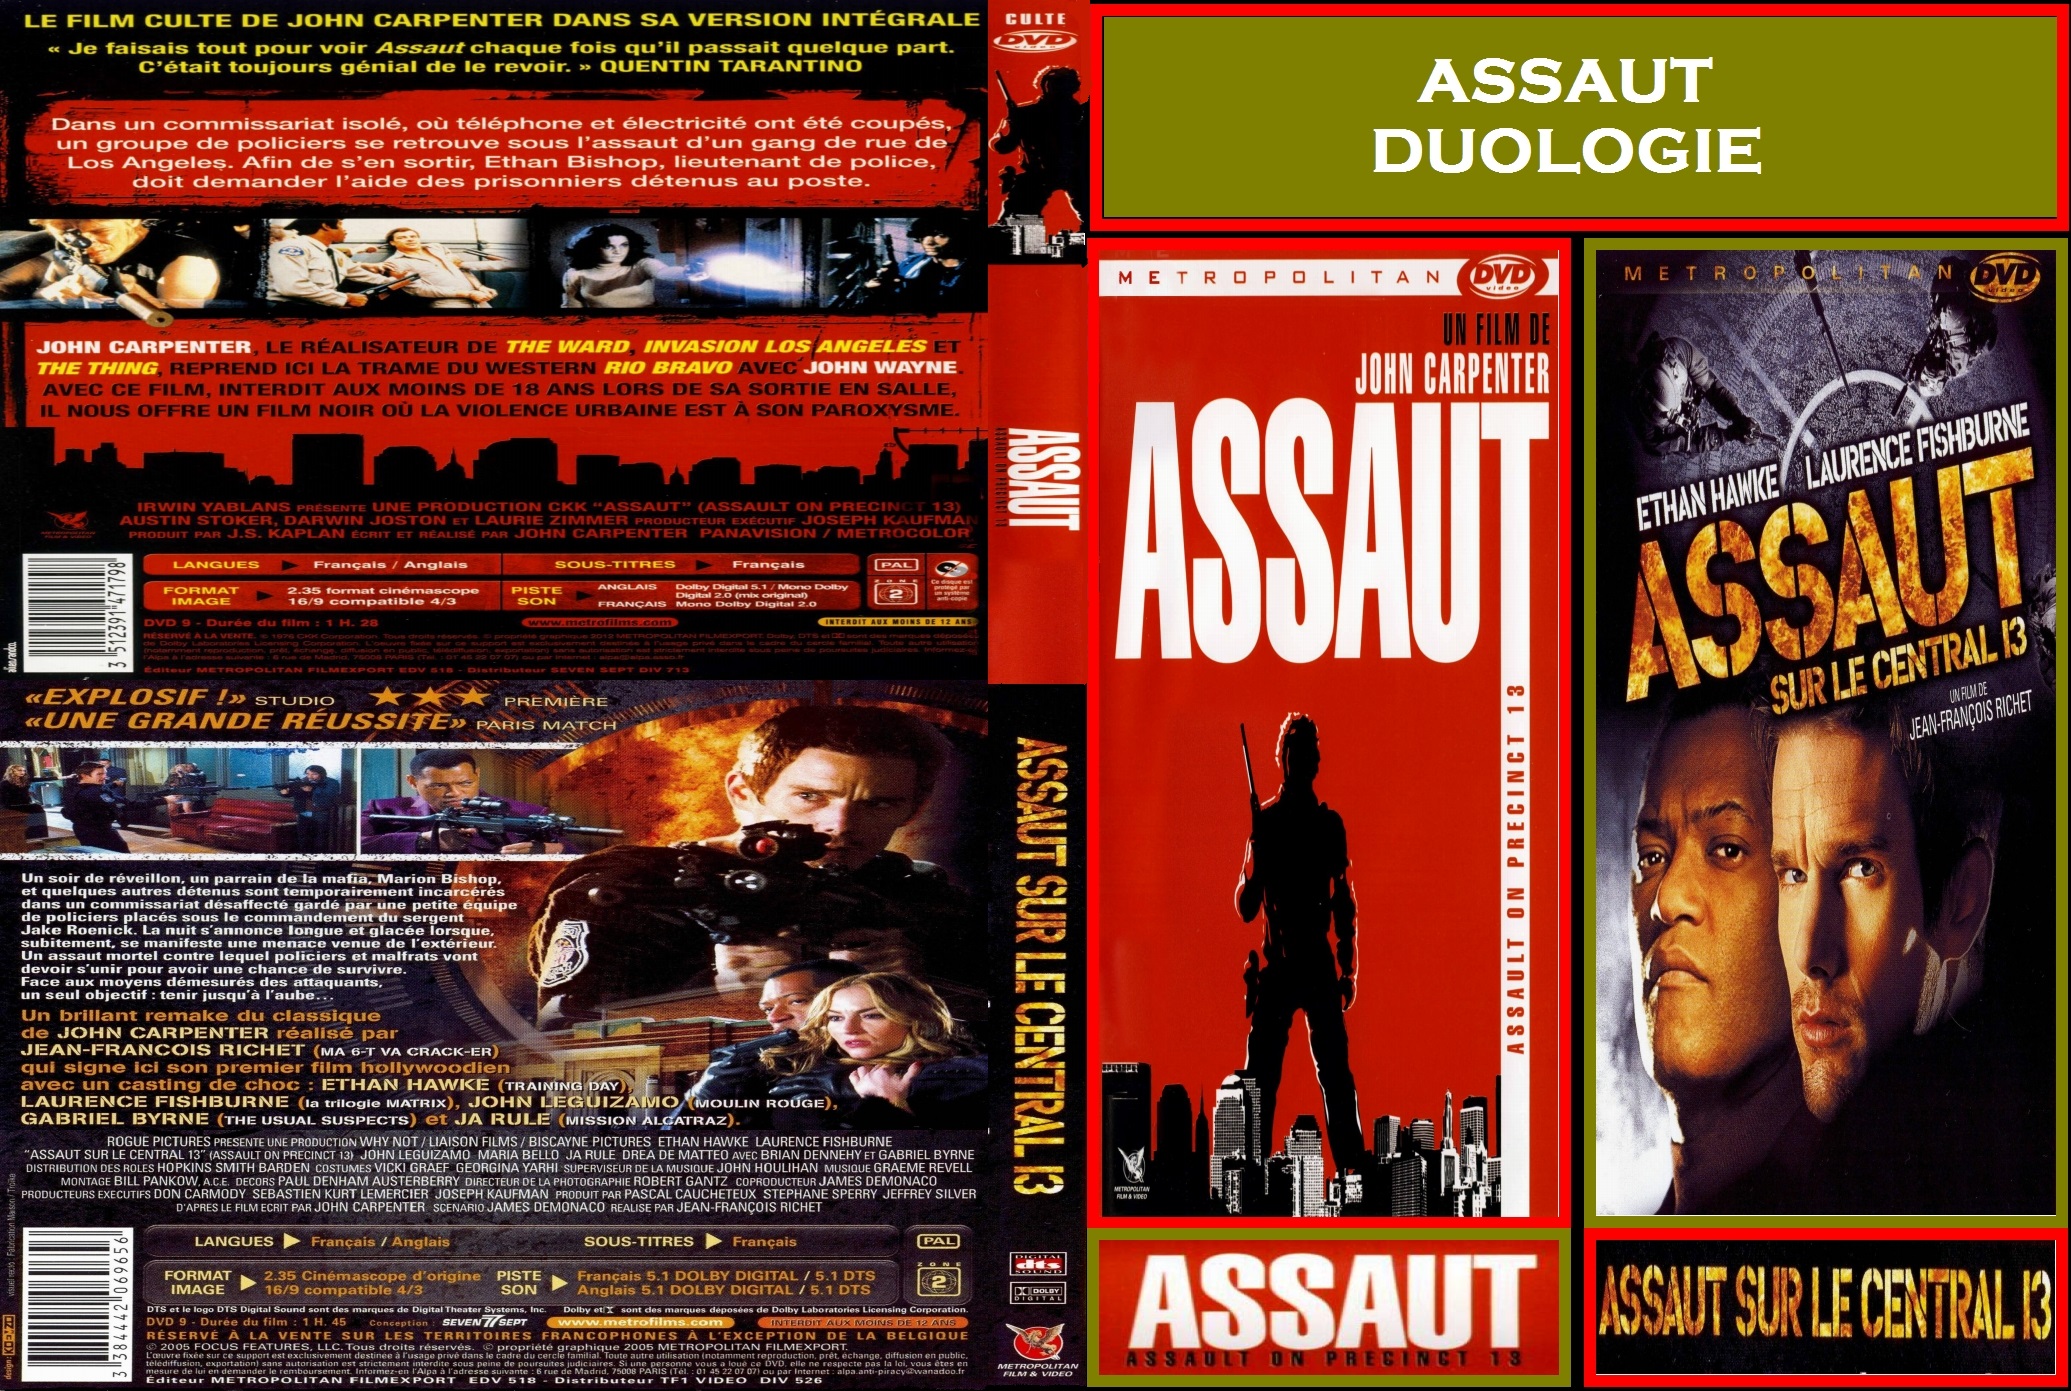 Jaquette DVD Assaut 1 & 2 custom